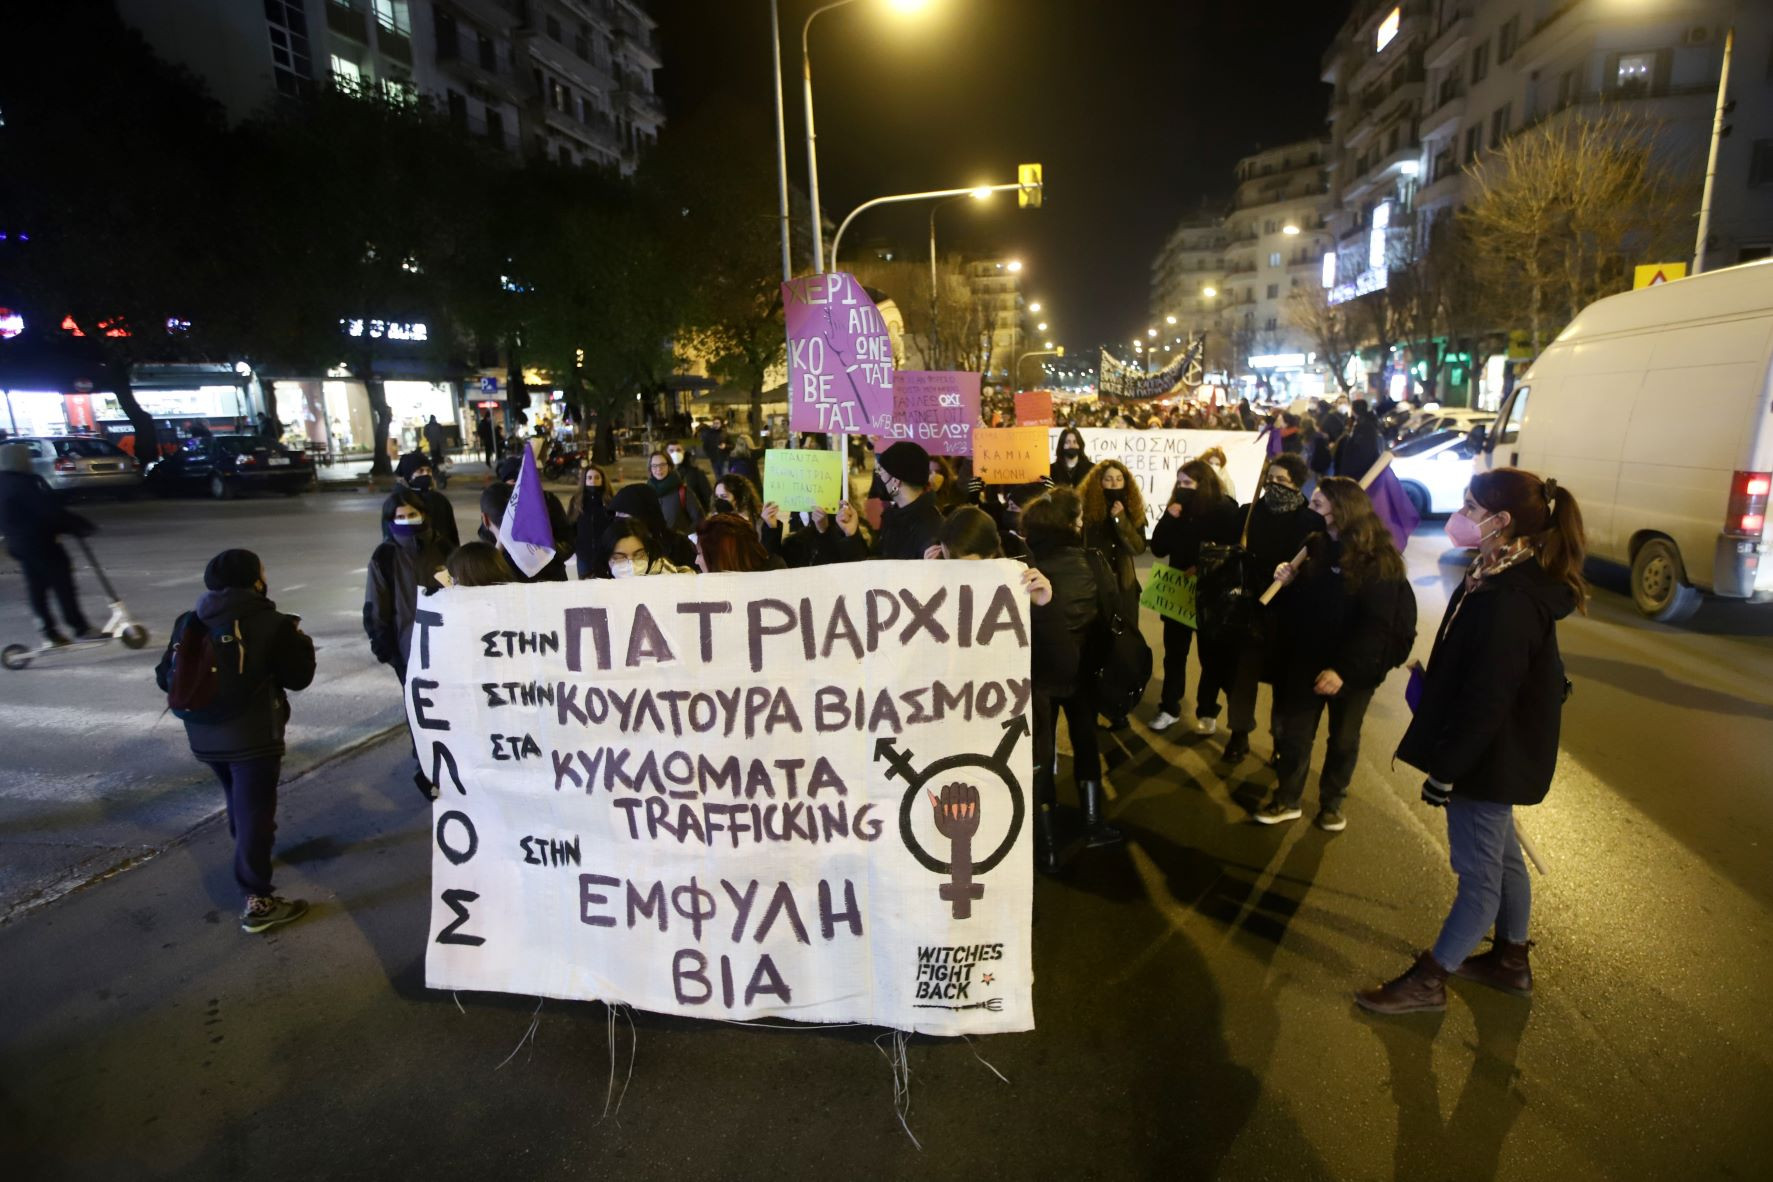 Θεσσαλονίκη: Πορεία ενάντια στην κουλτούρα του βιασμού και την έμφυλη βία